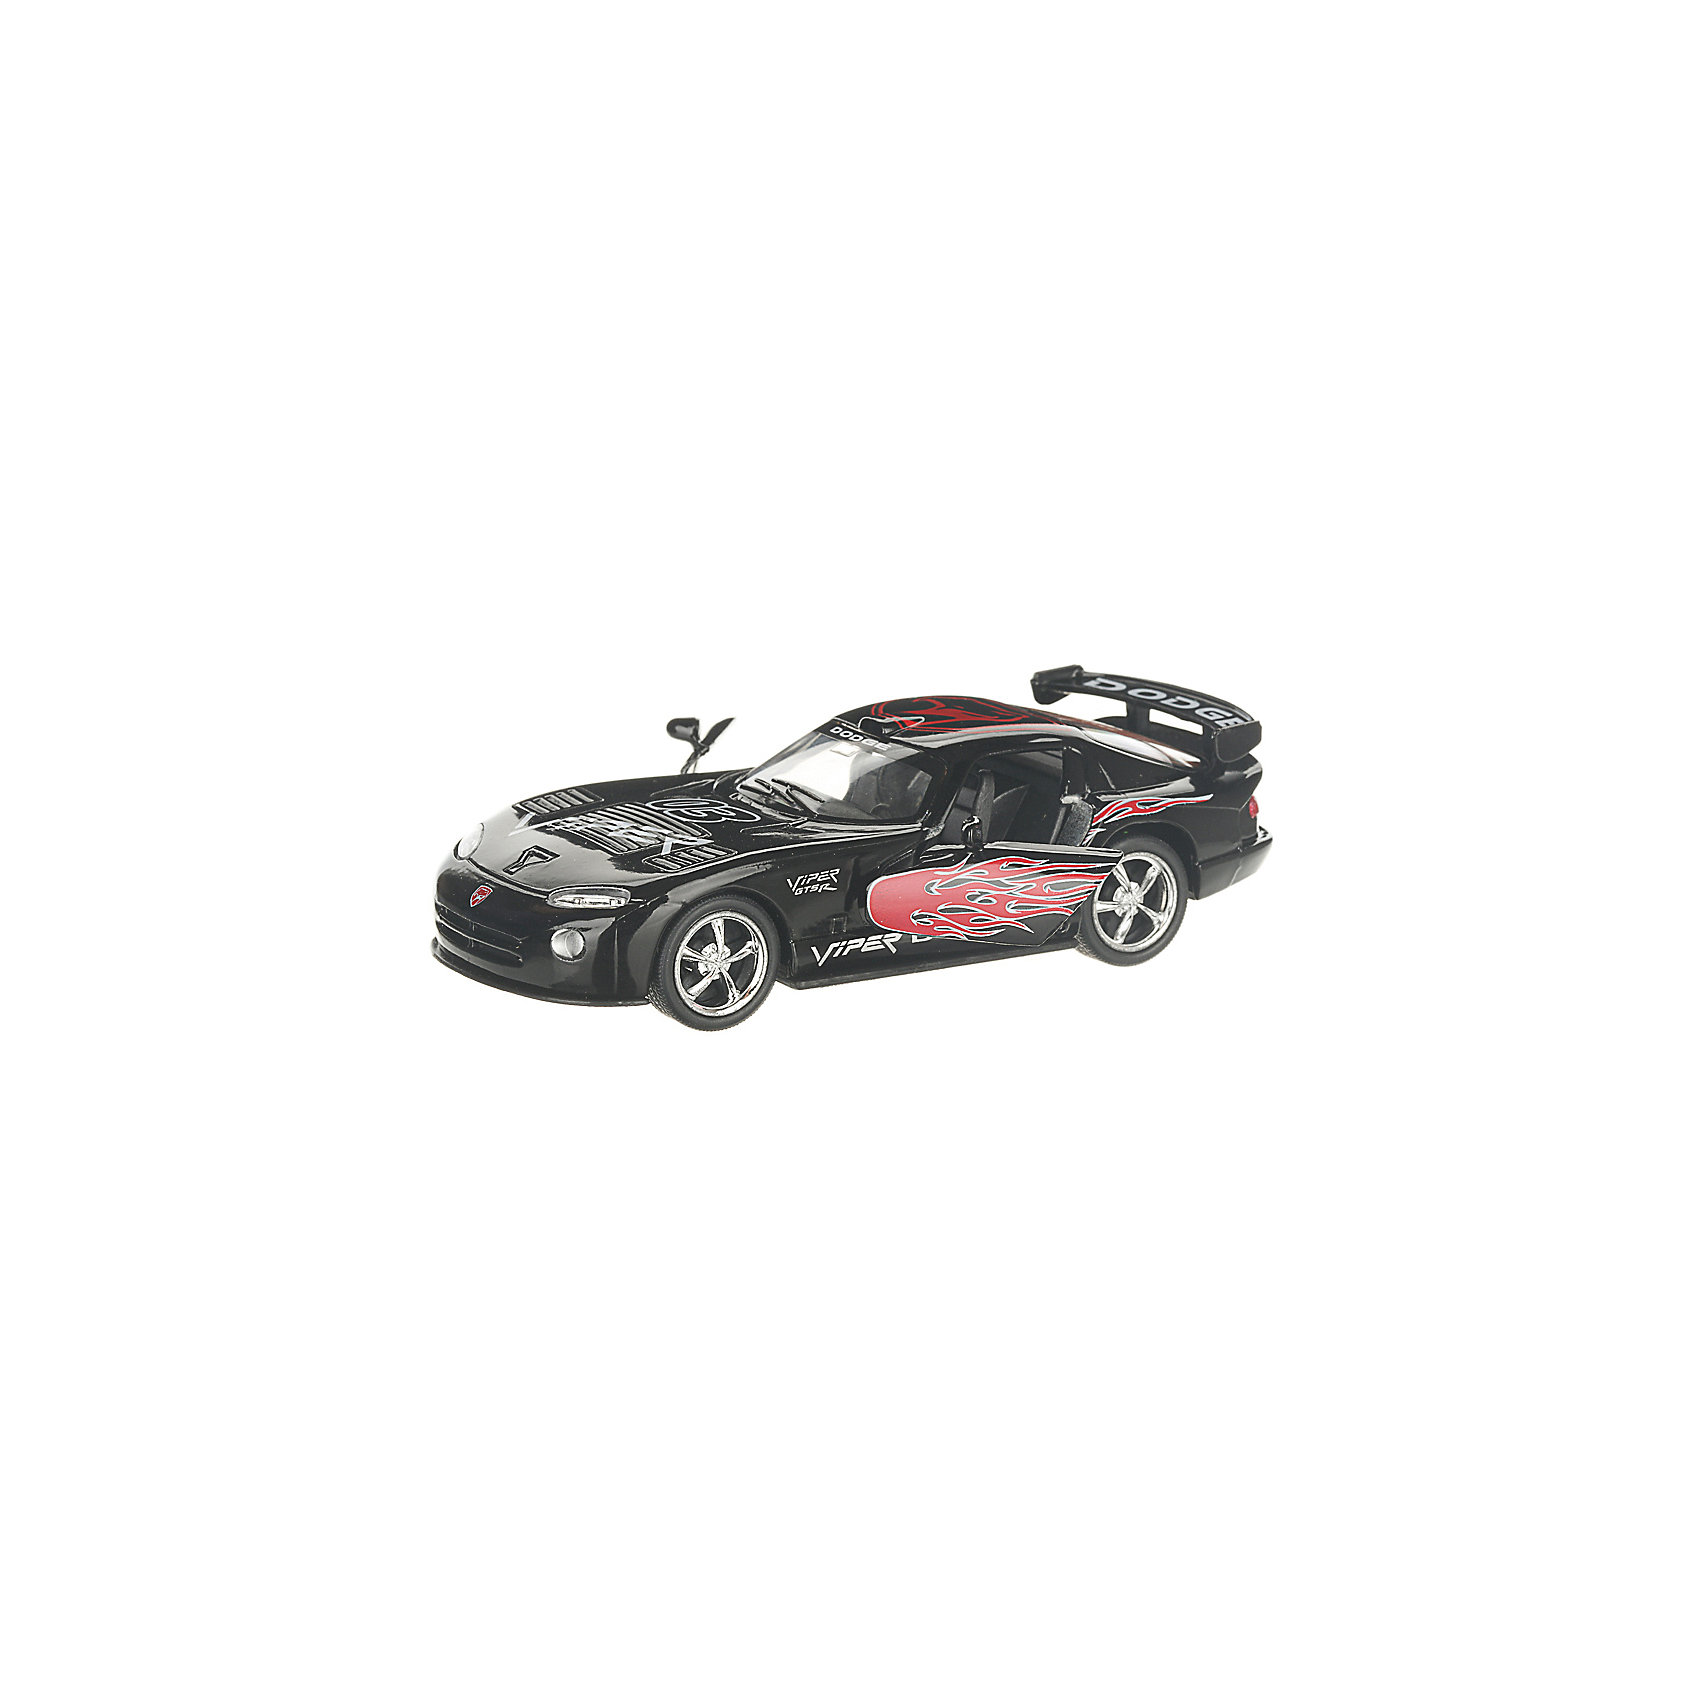 Коллекционная машинка Dodge Viper раскрашенный, чёрная Serinity Toys 13233001